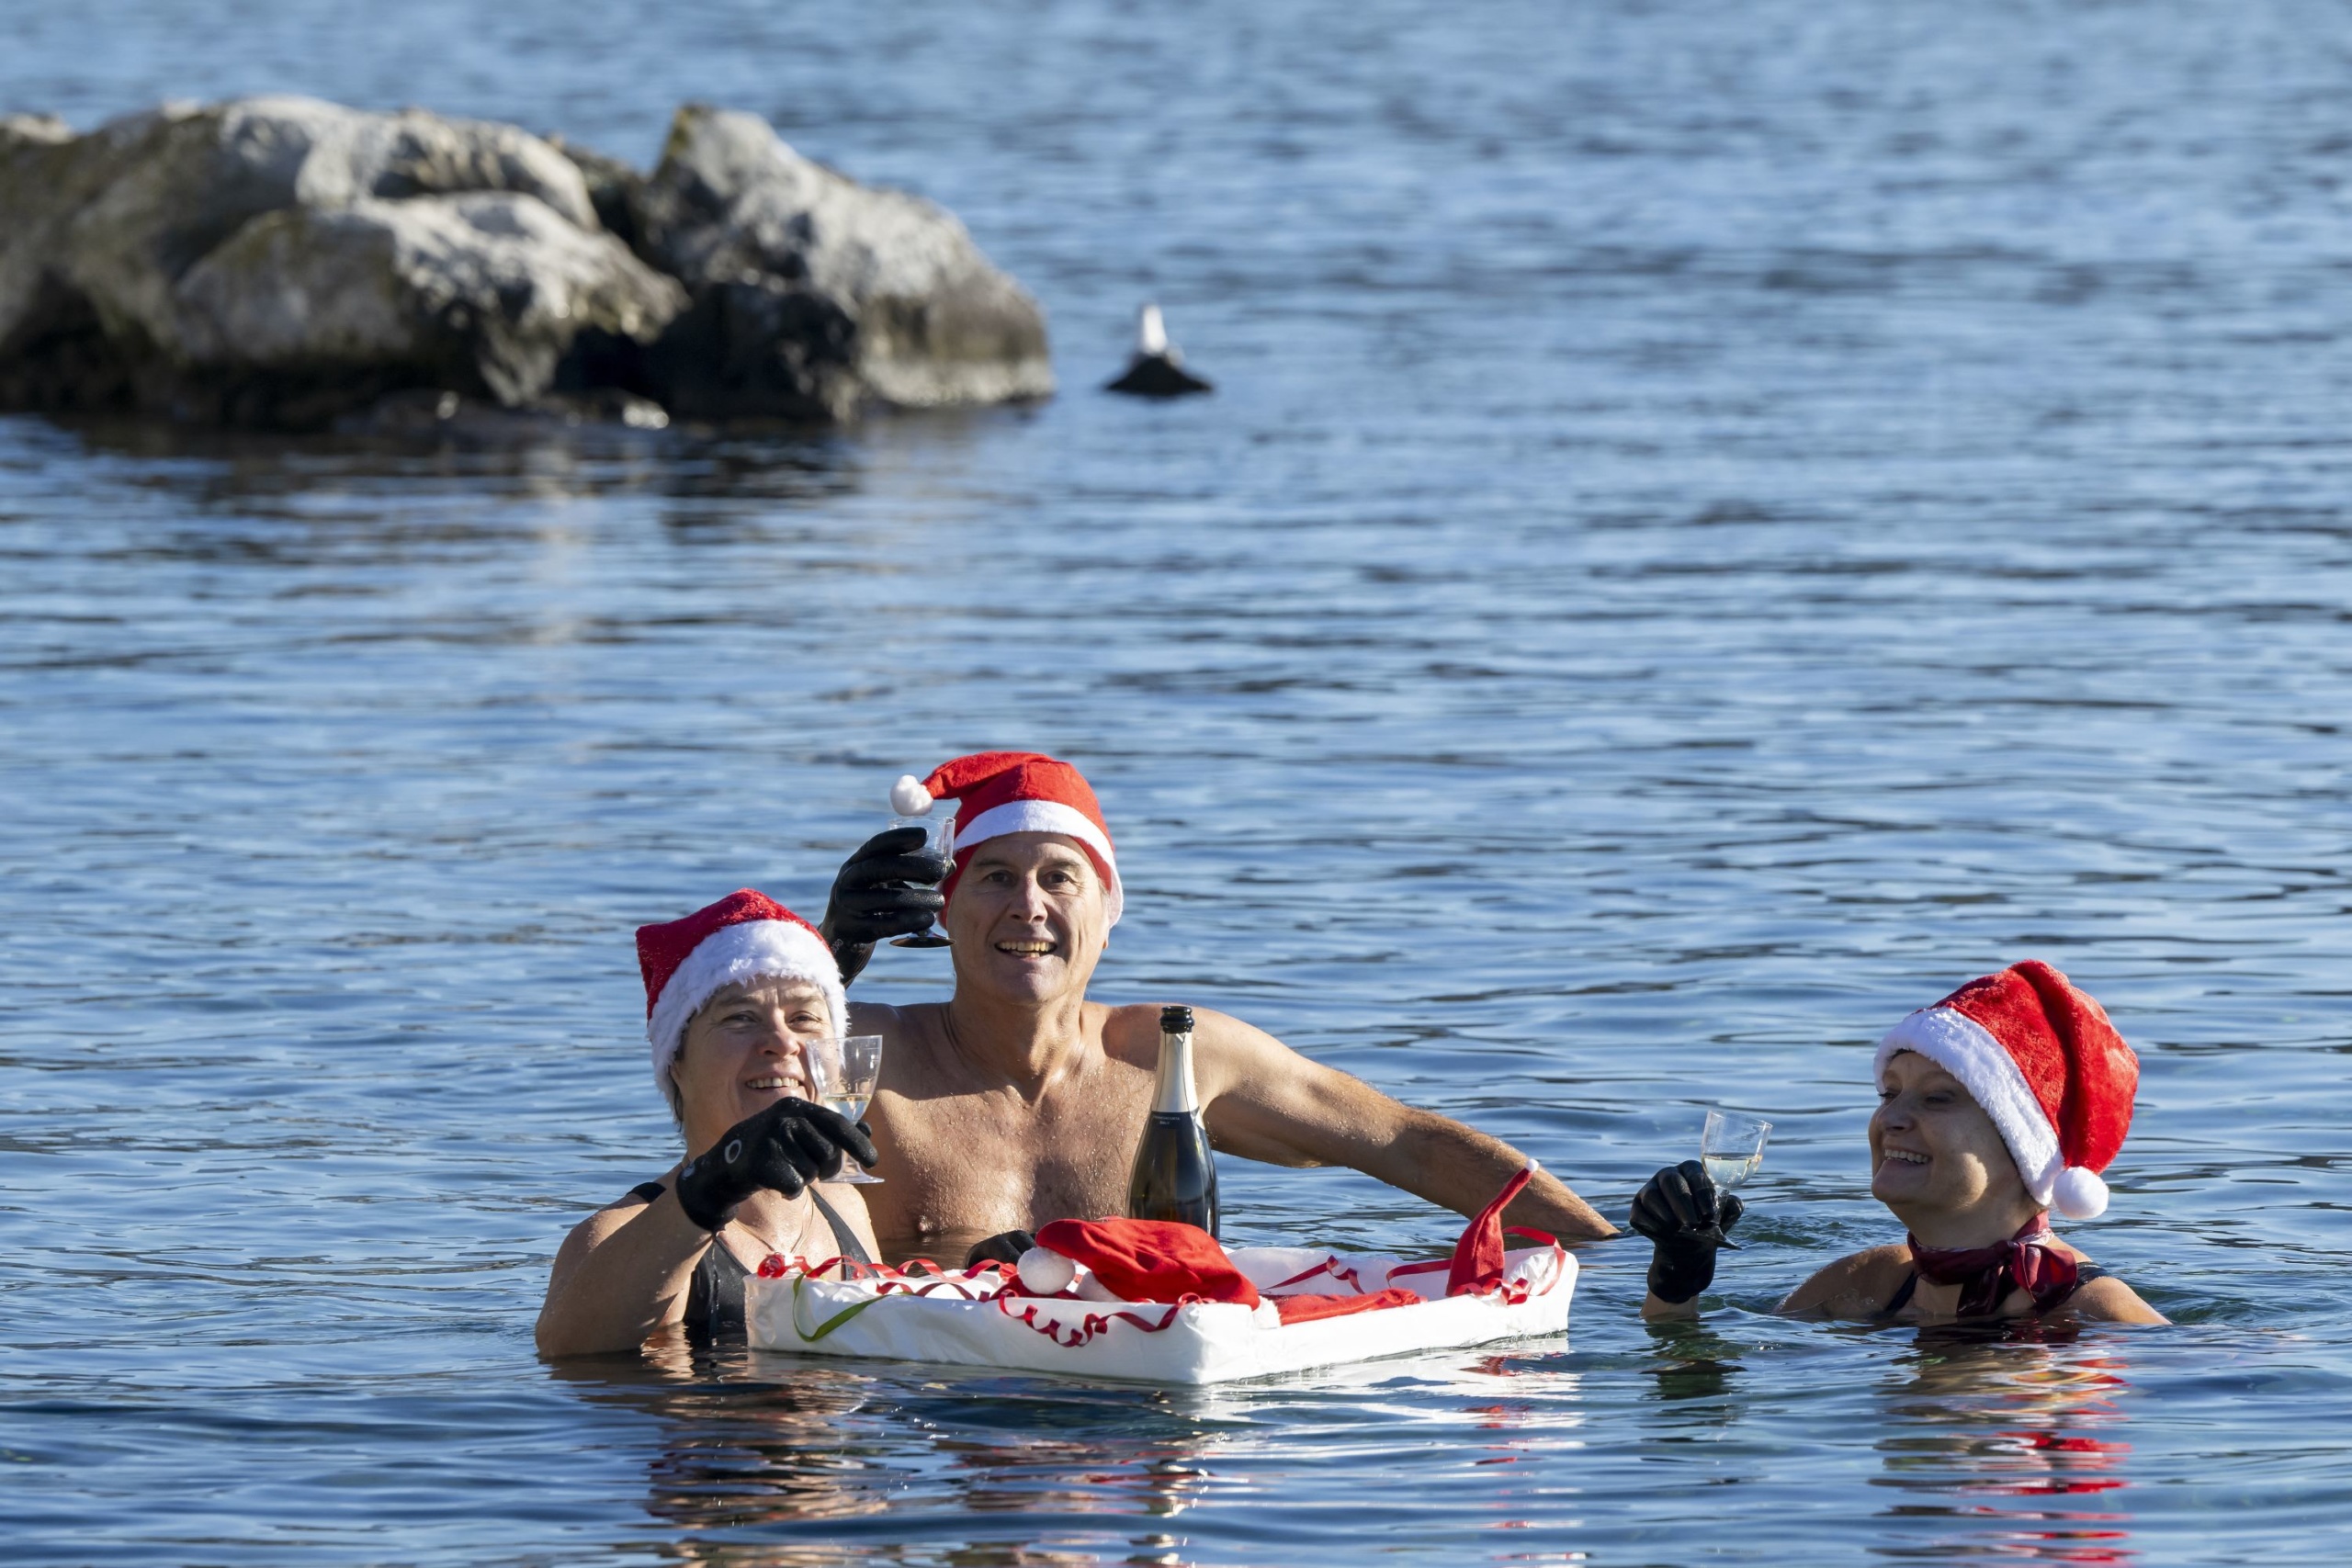 Mikulássapkát viselő emberek pezsgőt isznak a Genfi-tó 8 Celsius-fokos vizében rendezett hagyományos karácsonyi úszáson Genfben.